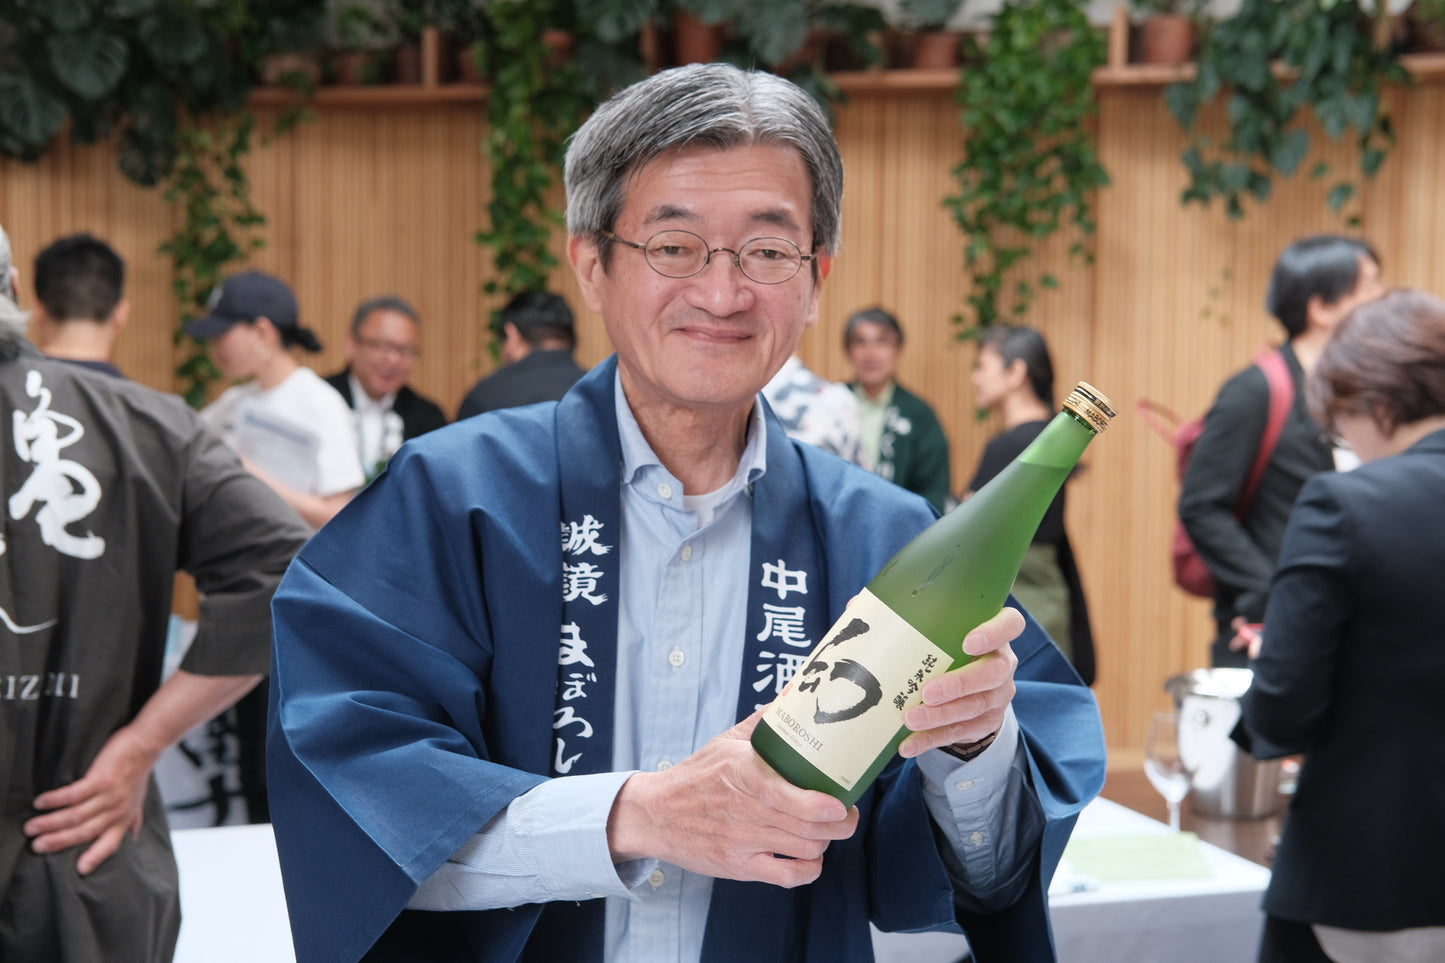 older man holding up a green bottle